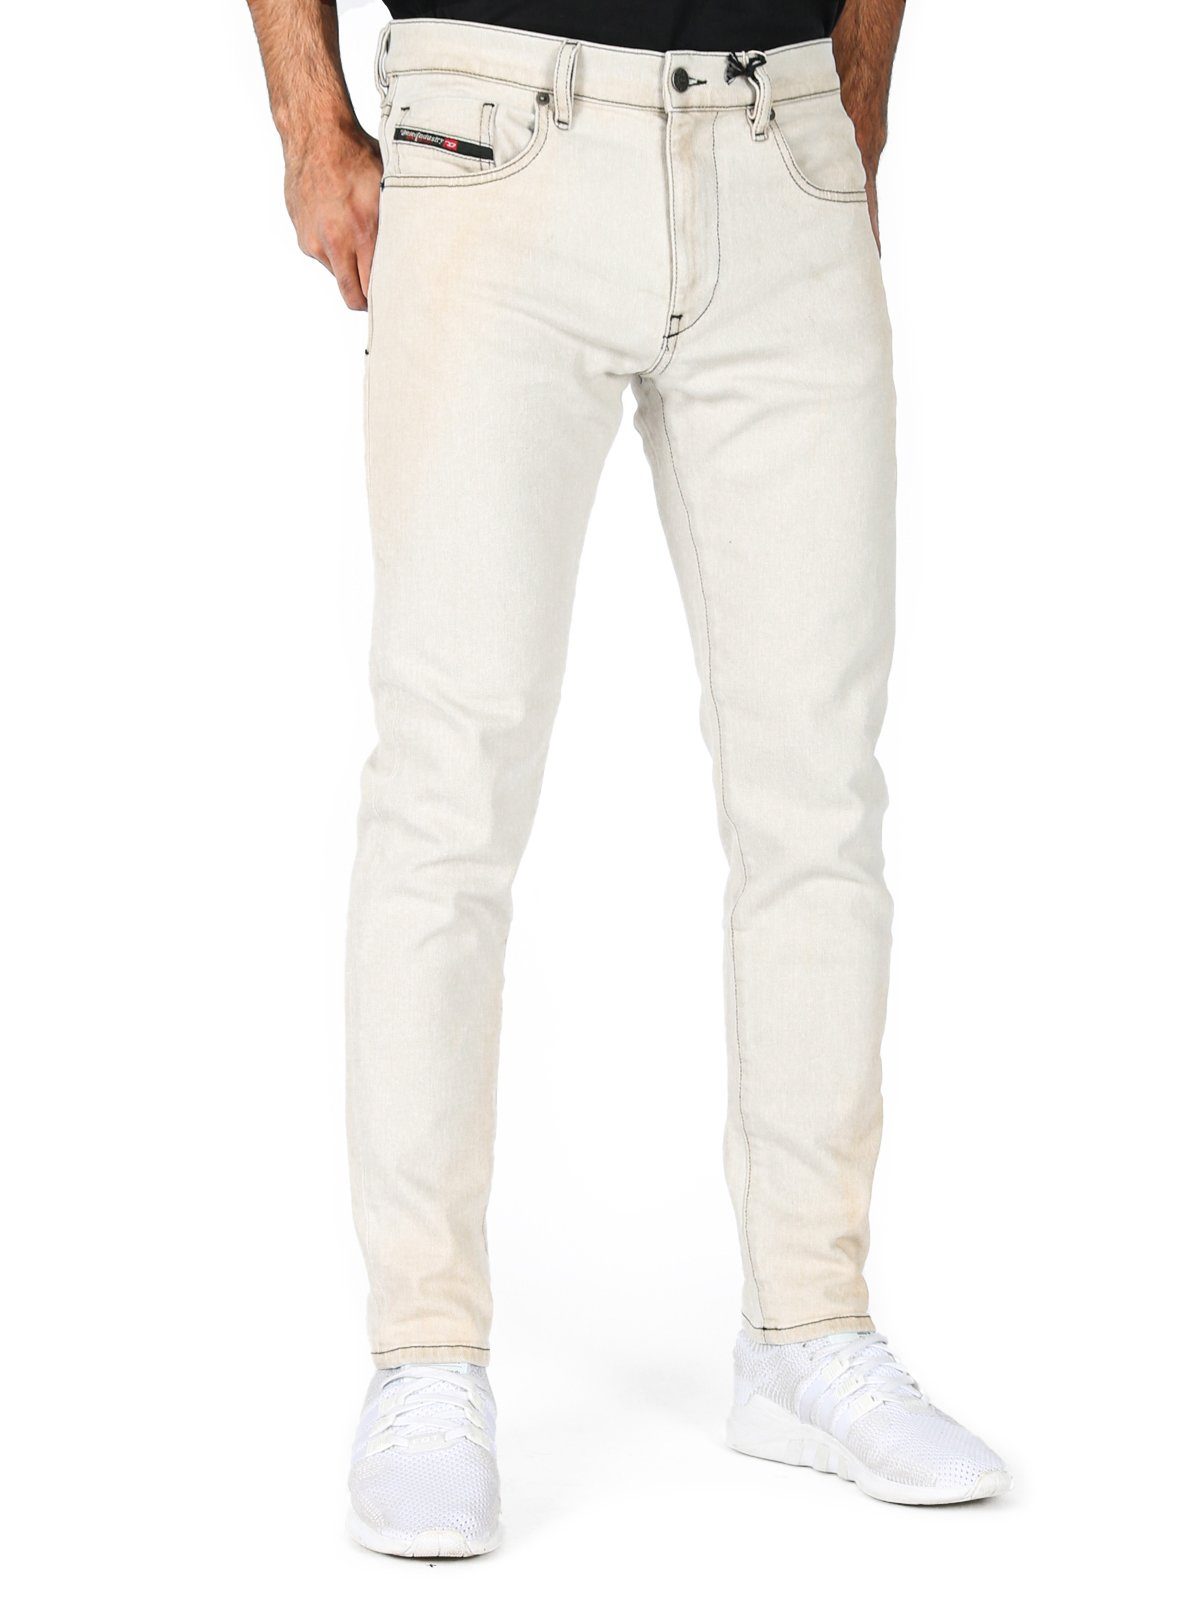 Diesel Slim-fit-Jeans Creme Weiß - Vintage Look - D-Strukt-SP20 09A52